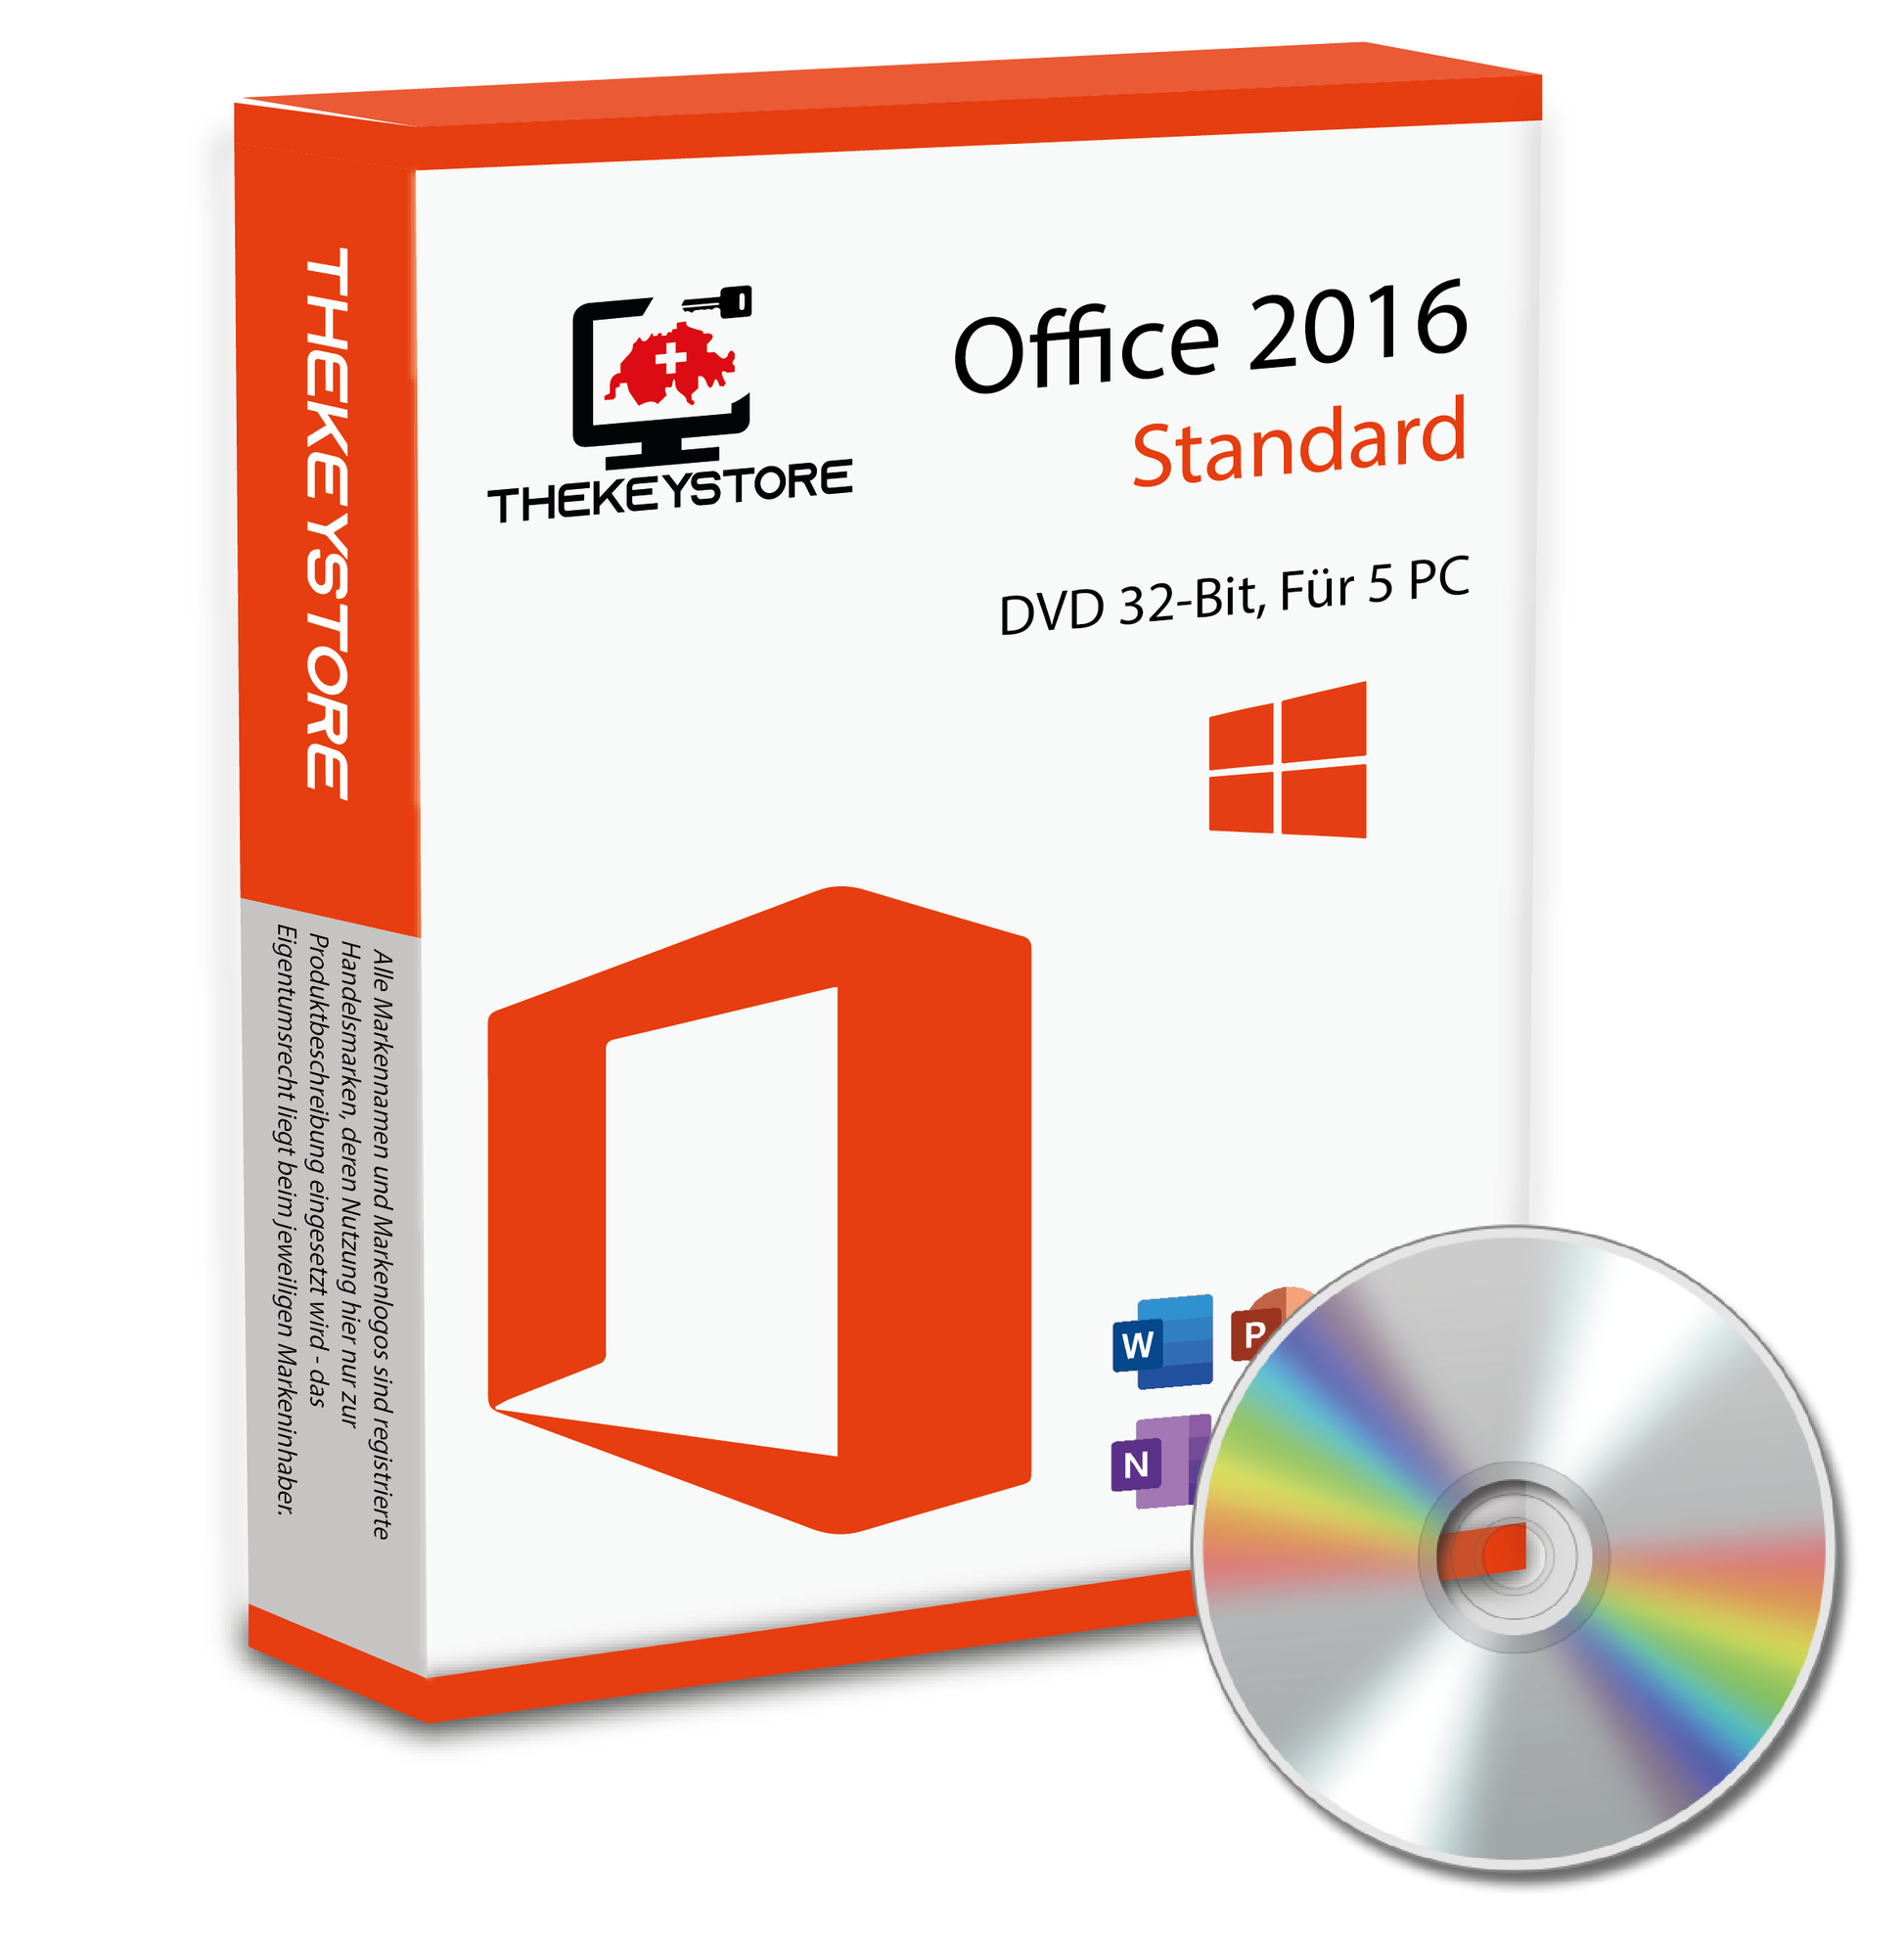 Microsoft Office 2016 Standard - Für 5 PC - TheKeyStore Schweiz